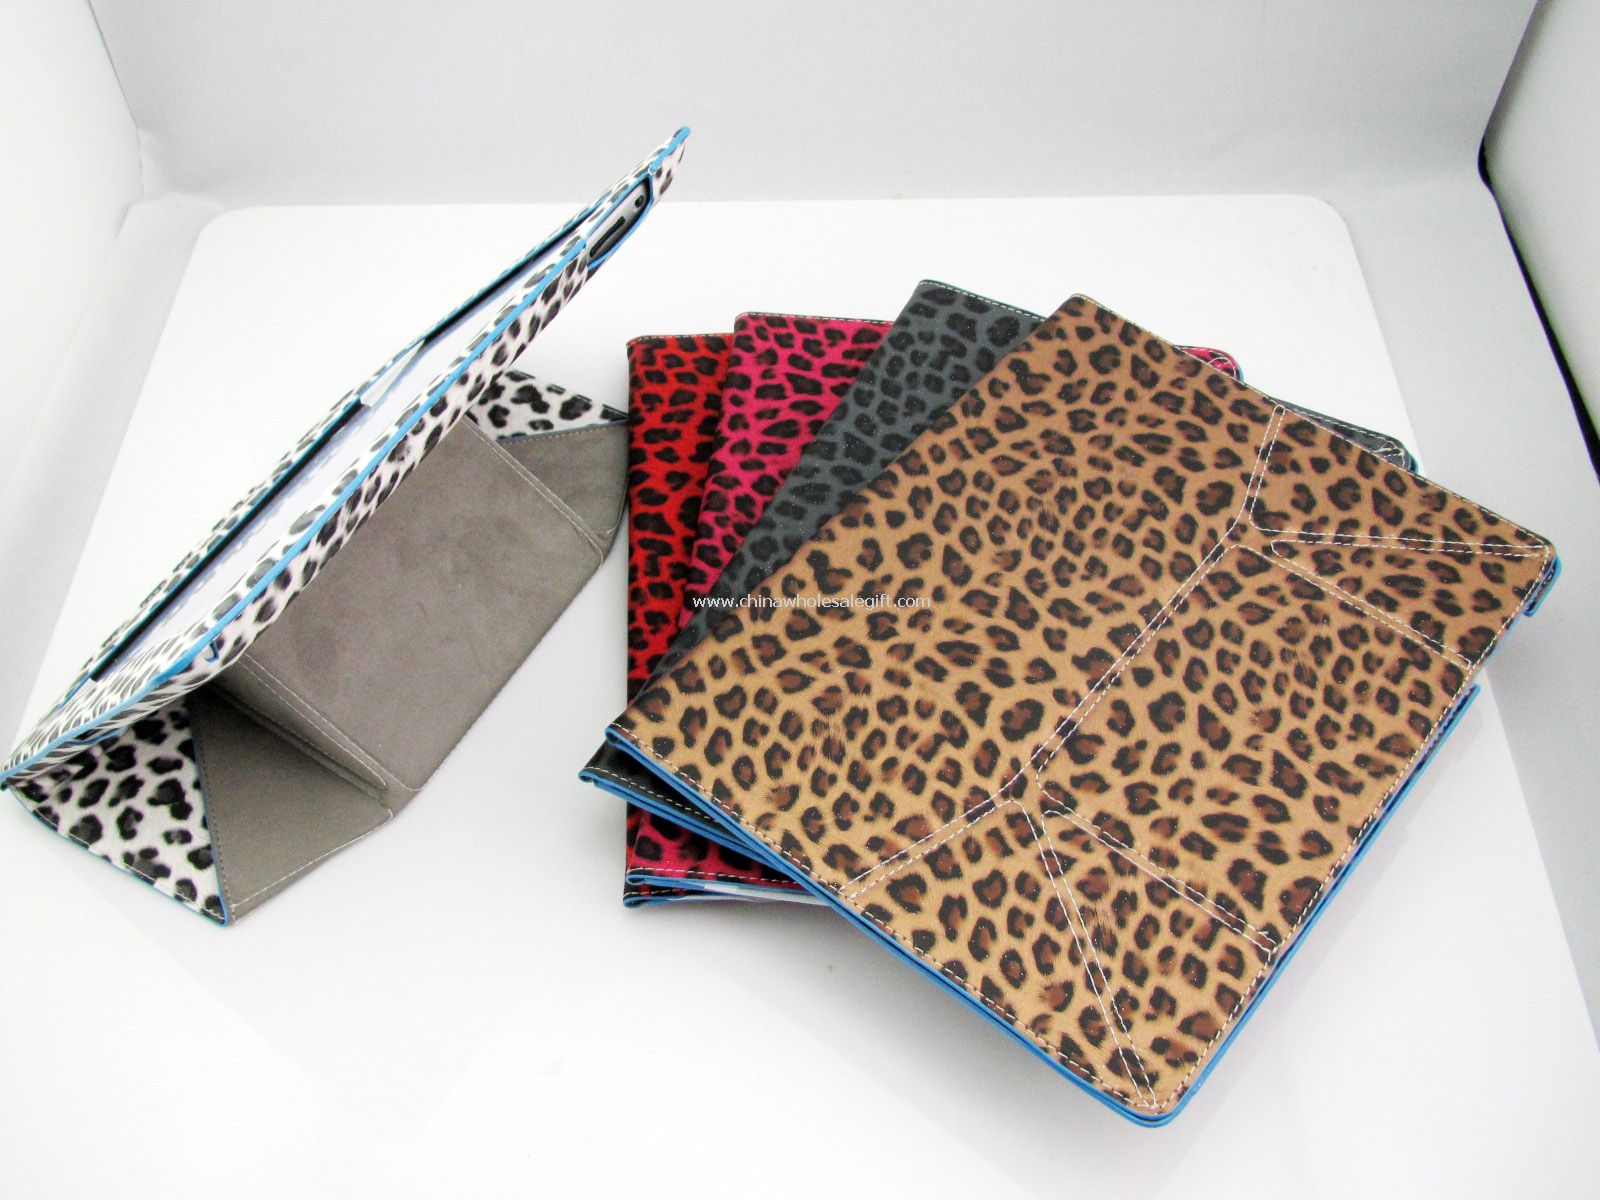 Leopard skinn tilfelle dekke stå hud For Apples nye iPad 3